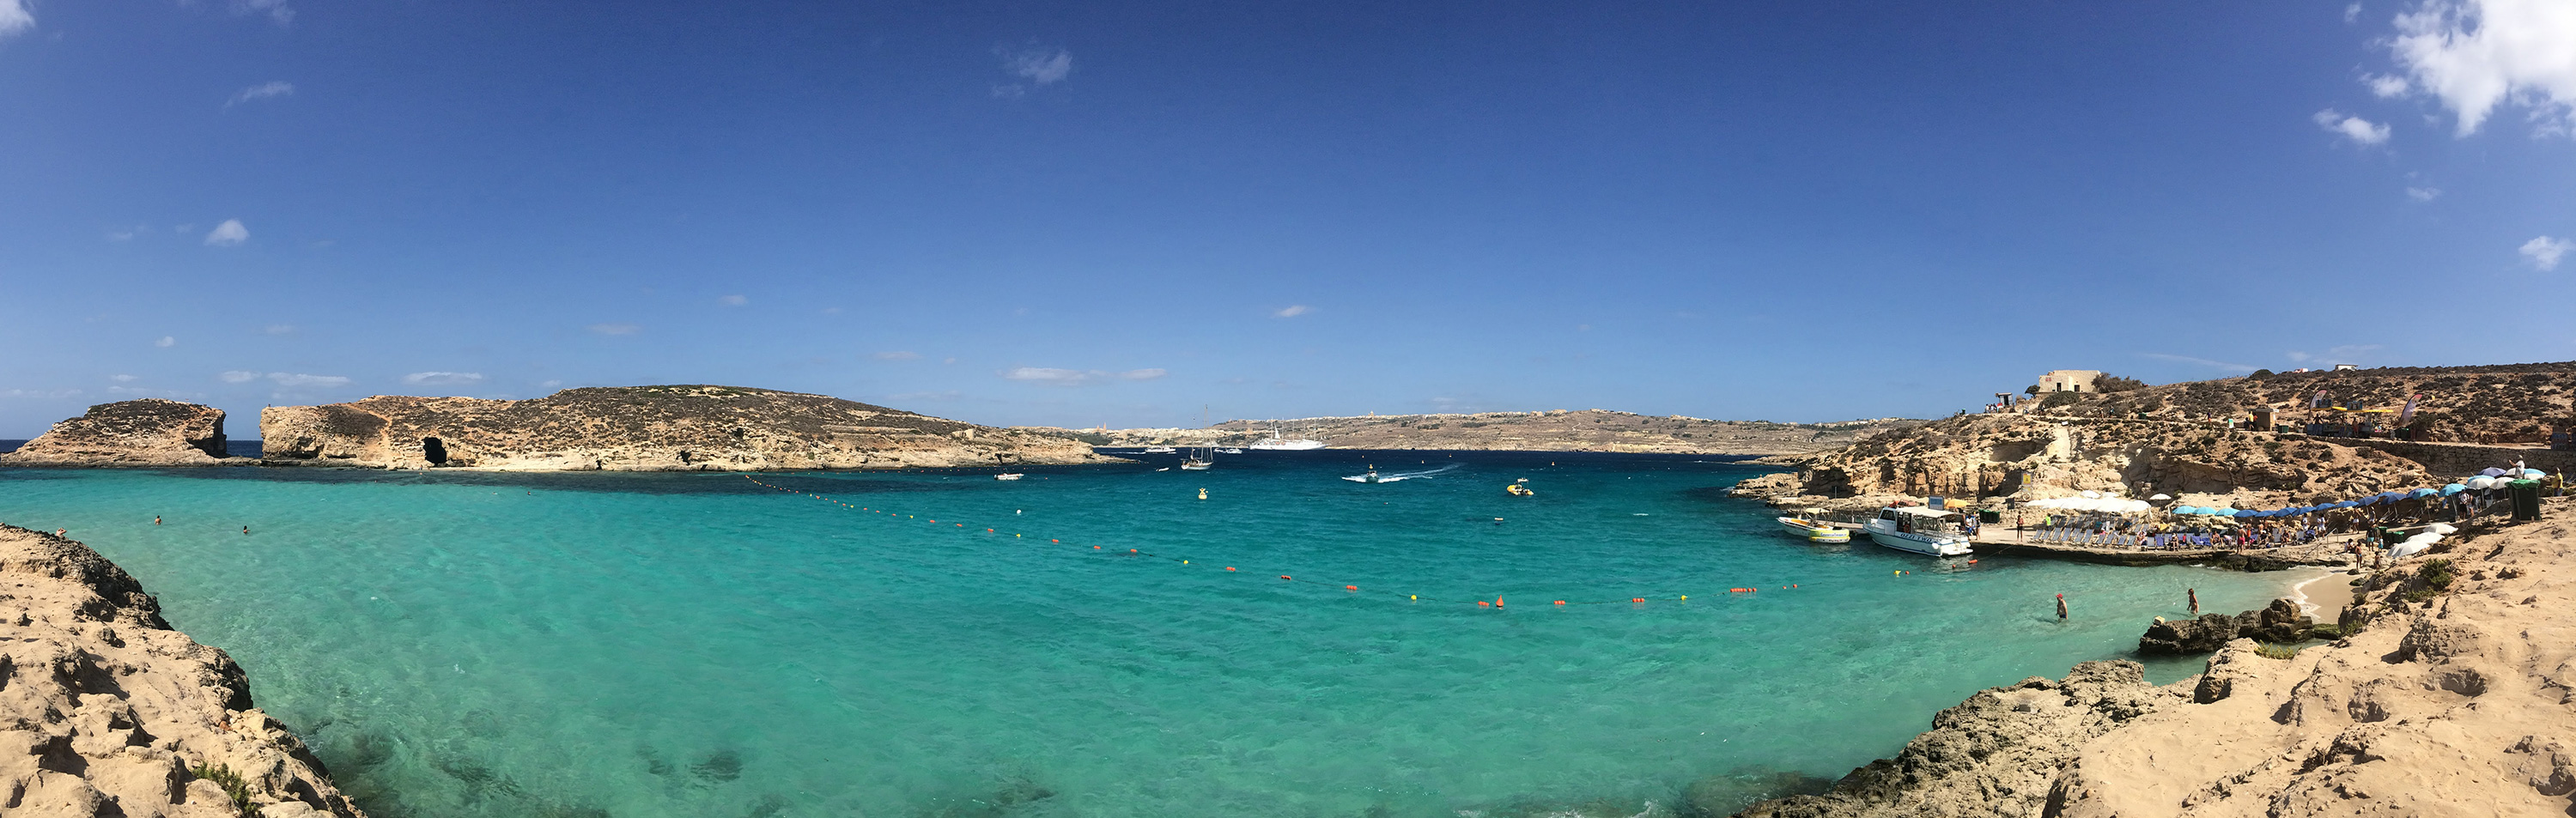 Blue Lagoon em Comino, Malta. Mar Mediterrâneo.